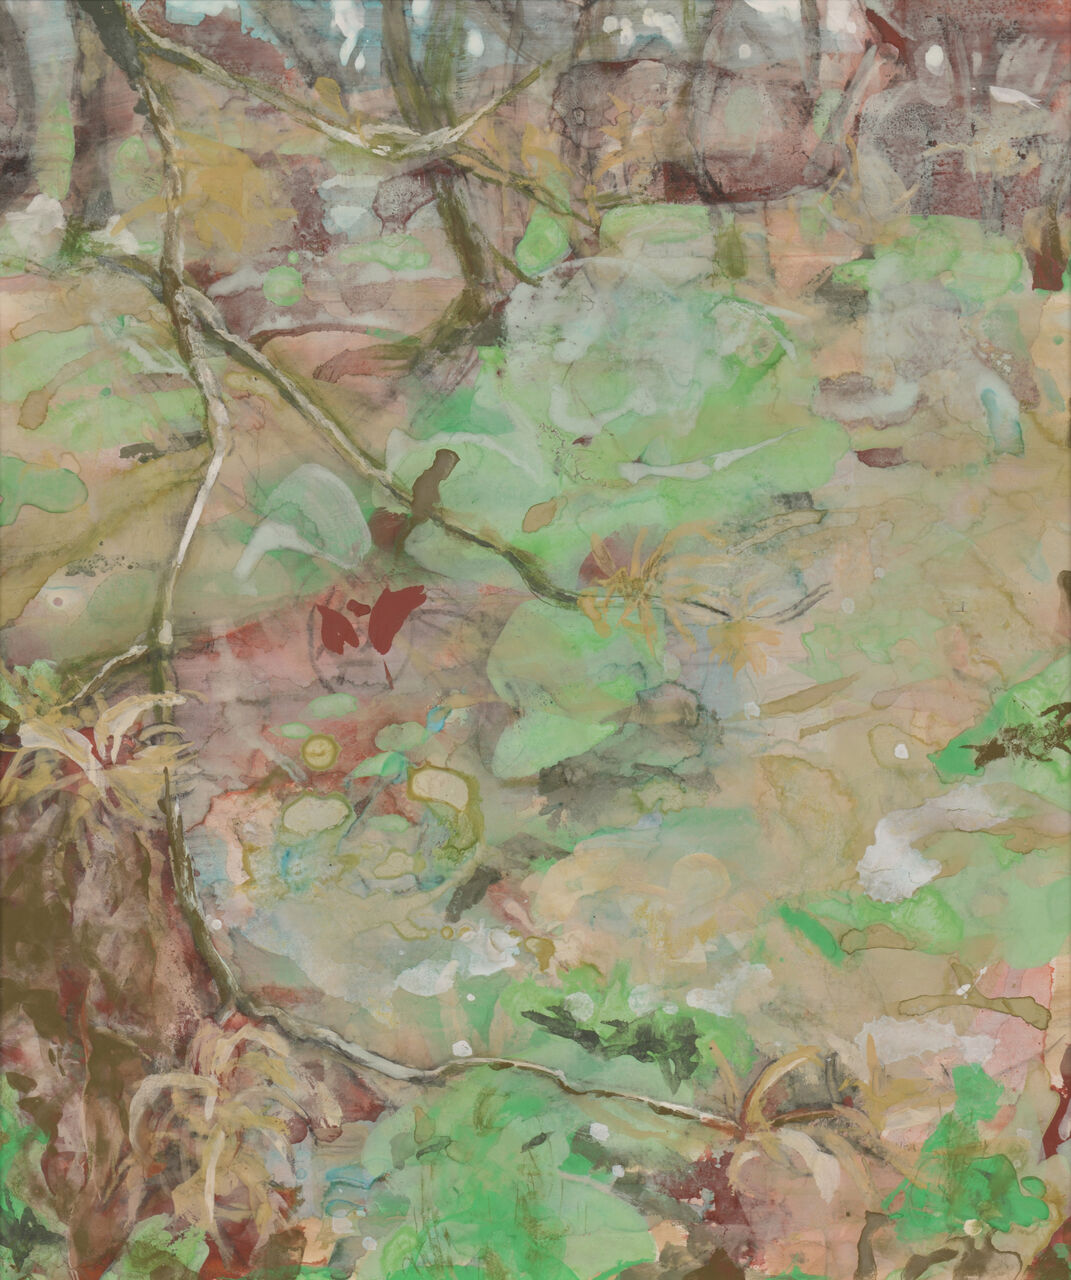 上野の森美術館 - 日本の自然を描く展 - 第36回 - 受賞作品